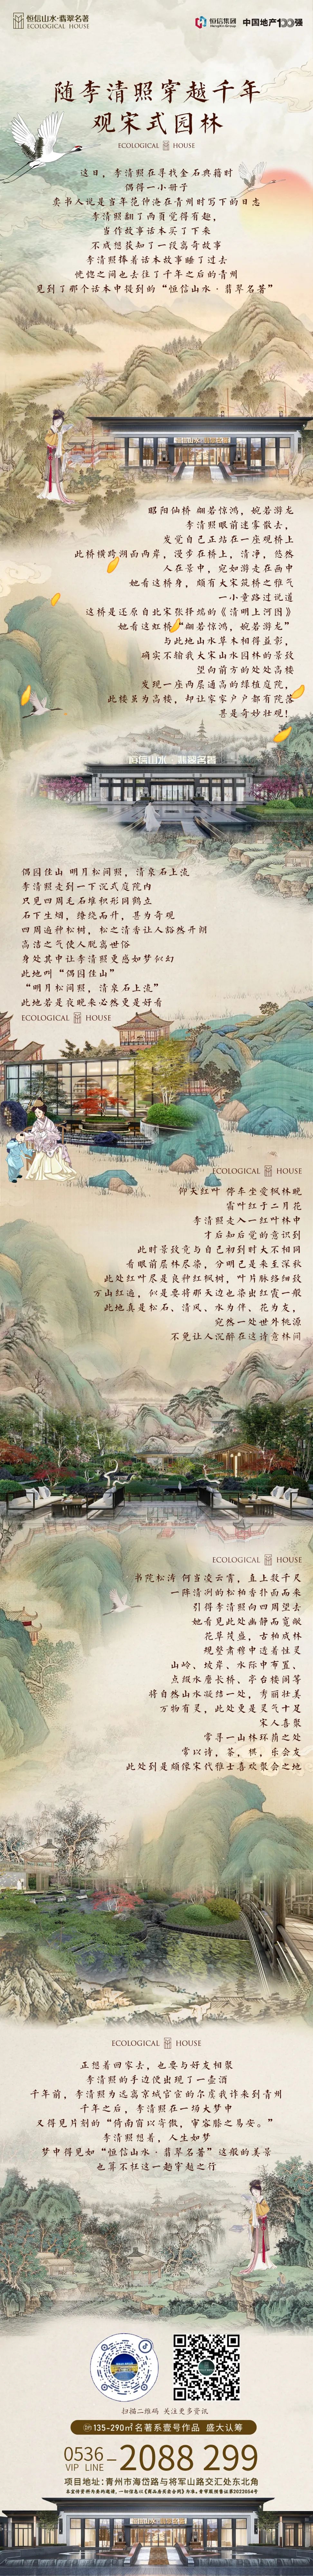 随李清照穿越千年，观宋式园林——潍坊恒信山水·翡翠名著